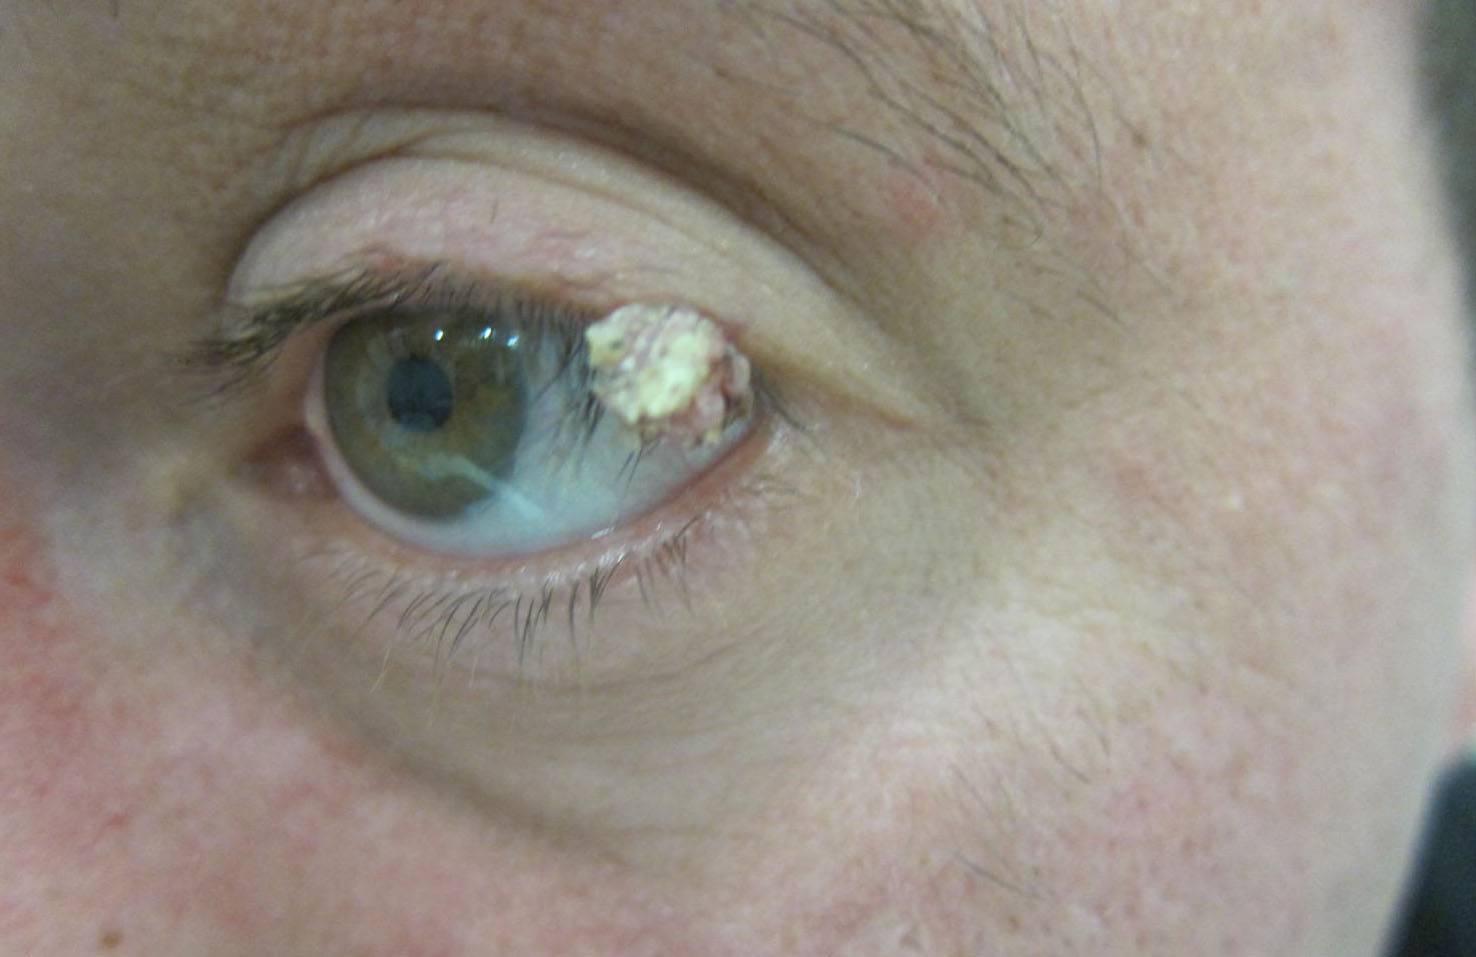 Жировик на веках глаз (липома): причины, виды, лечение - "здоровое око"